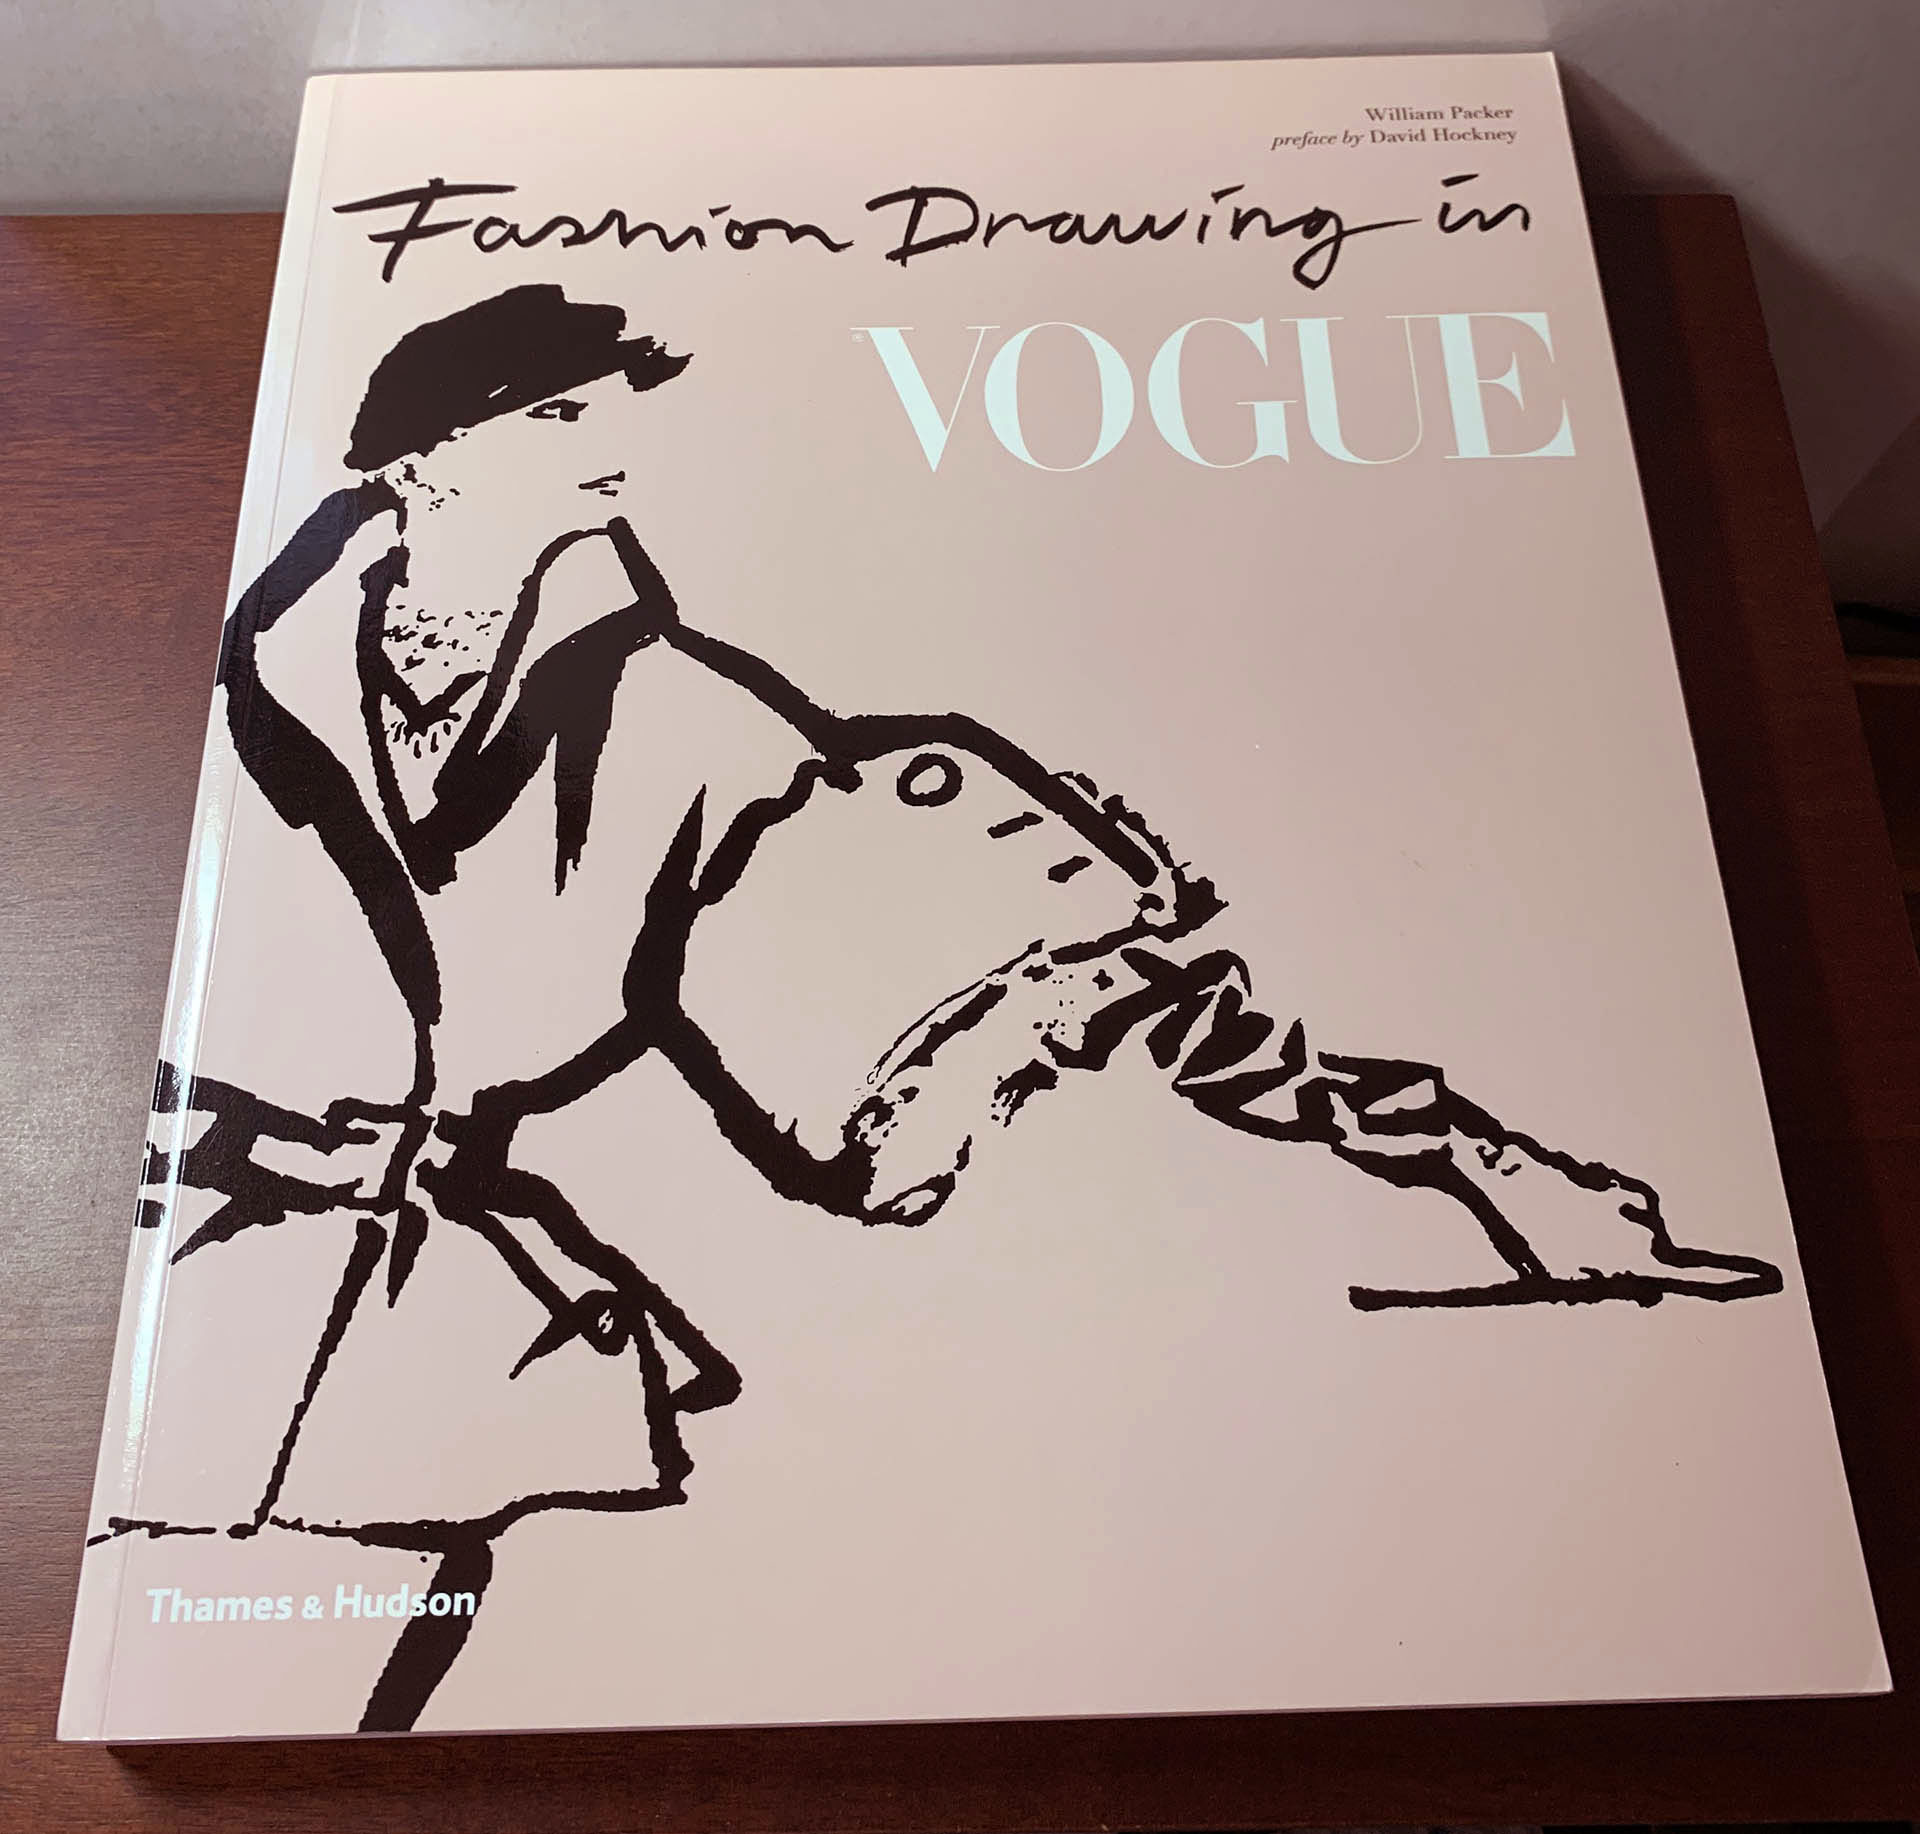 【アートブックレビュー】「Fashion Drawing in Vogue」William Packer (著) 雑誌Vogueの古典的なファッションイラストレーションの歴史をまとめた一冊